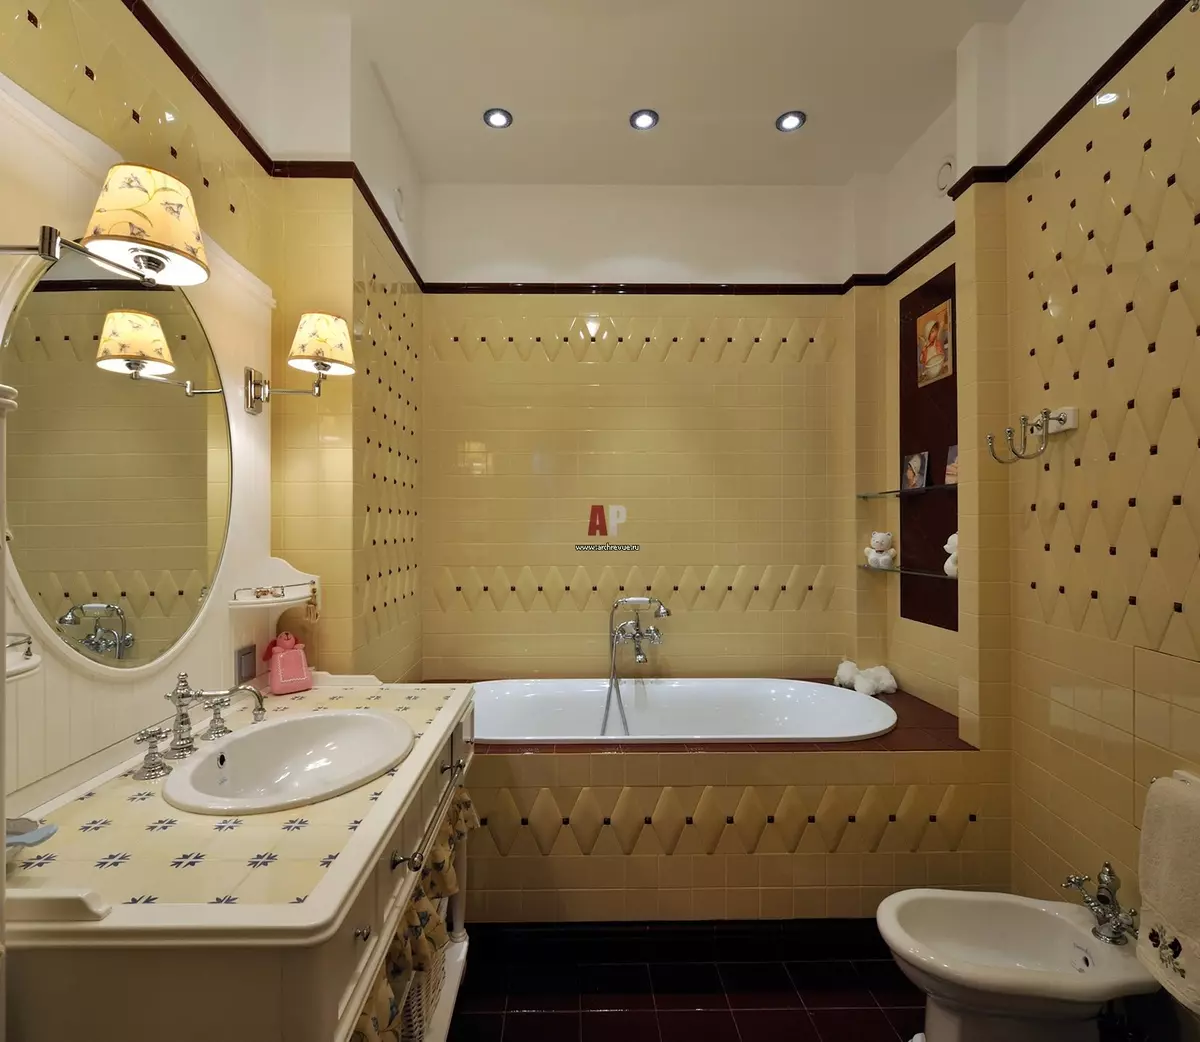 Miroir rond dans la salle de bain: miroirs design dans un cadre en bois, miroirs ronds de couleur noire et autre pour la salle de bain 10427_12